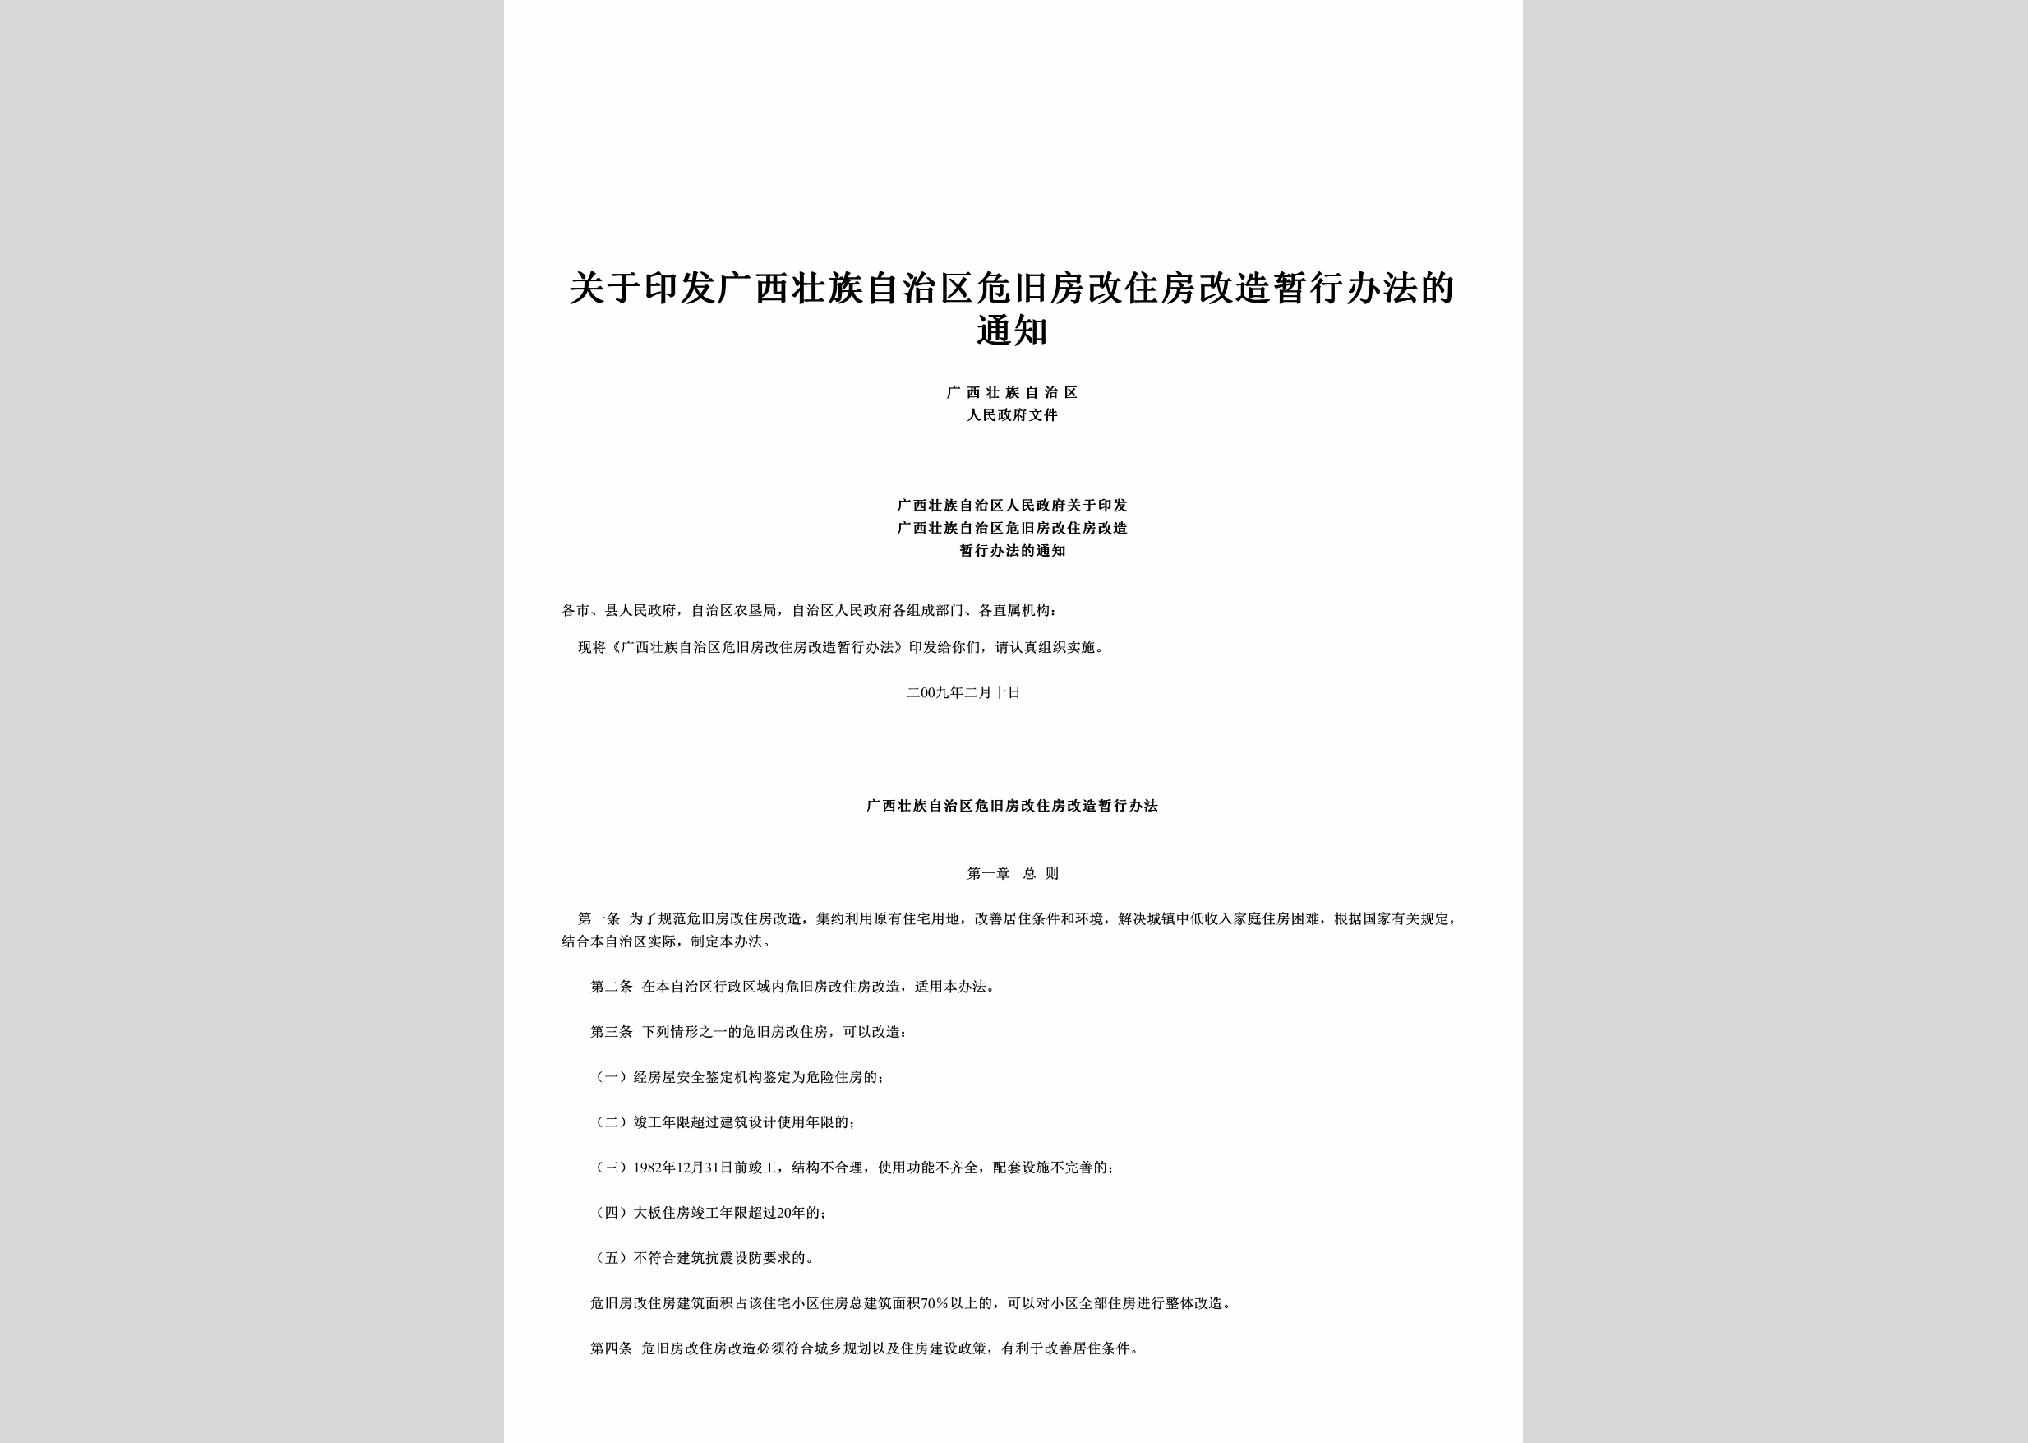 桂政发[2009]16号：关于印发广西壮族自治区危旧房改住房改造暂行办法的通知